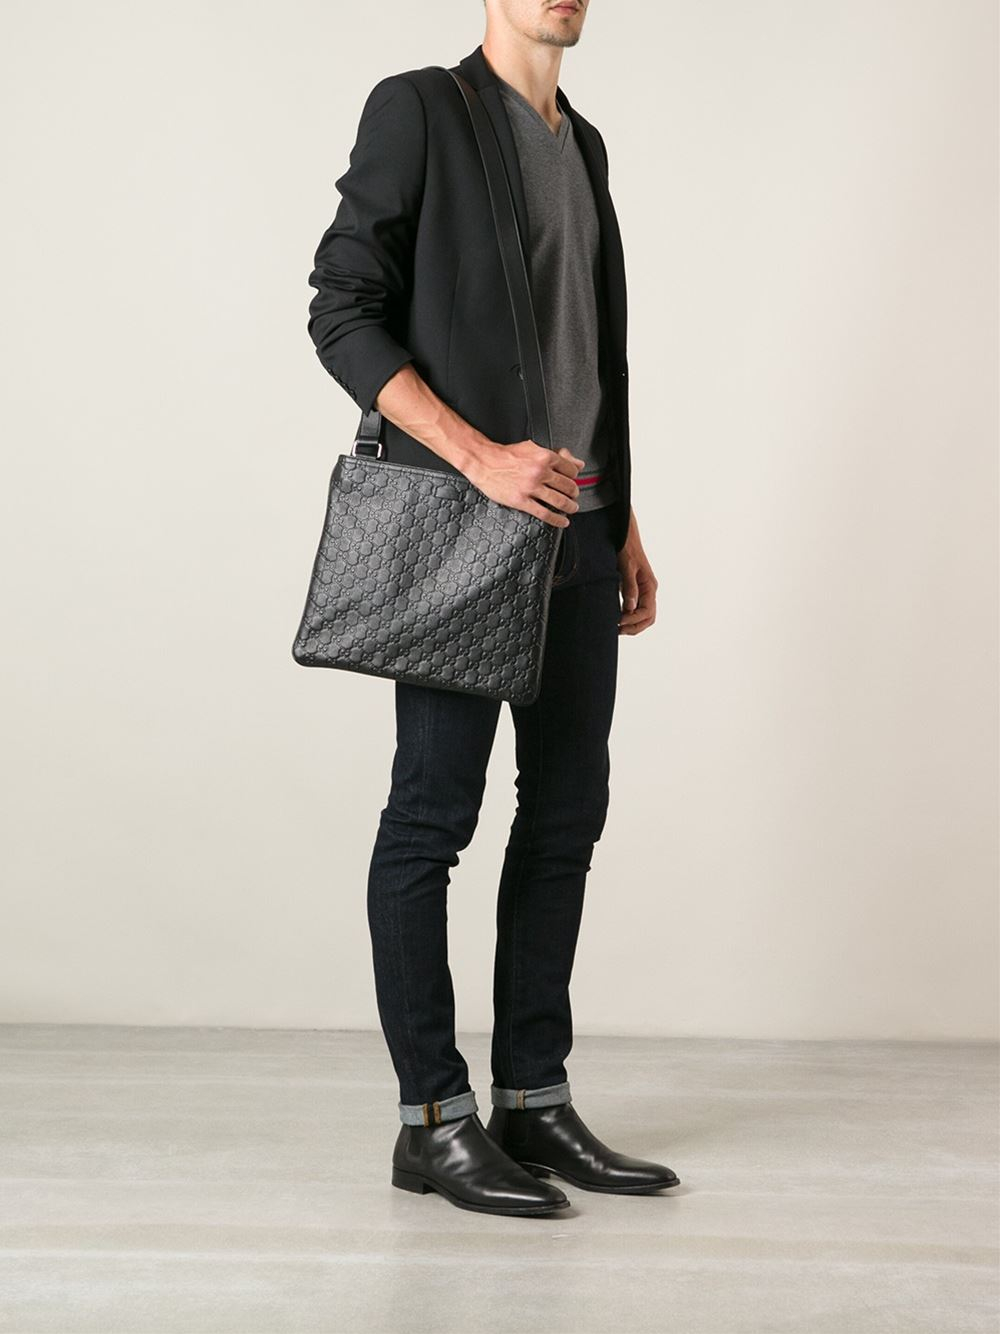 Gucci Monogram Messenger Bag in Black for Men - Lyst